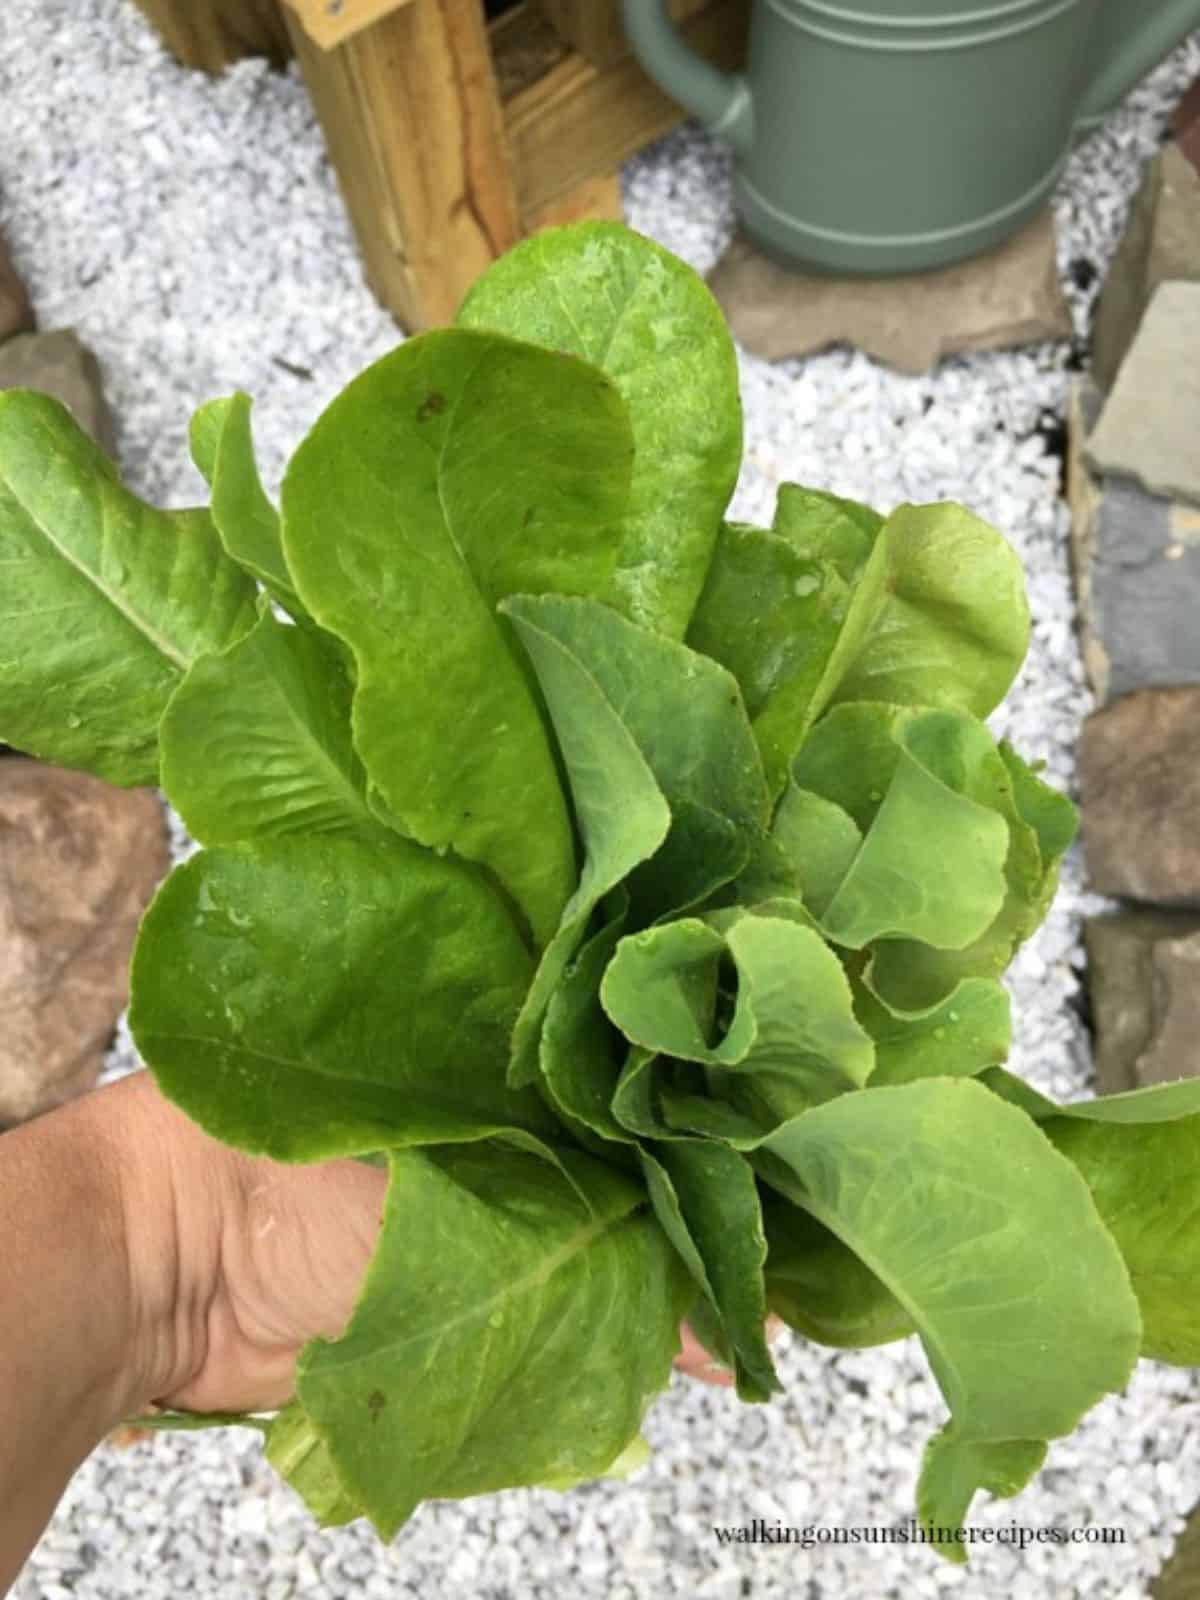 holding fresh lettuce from the garden.